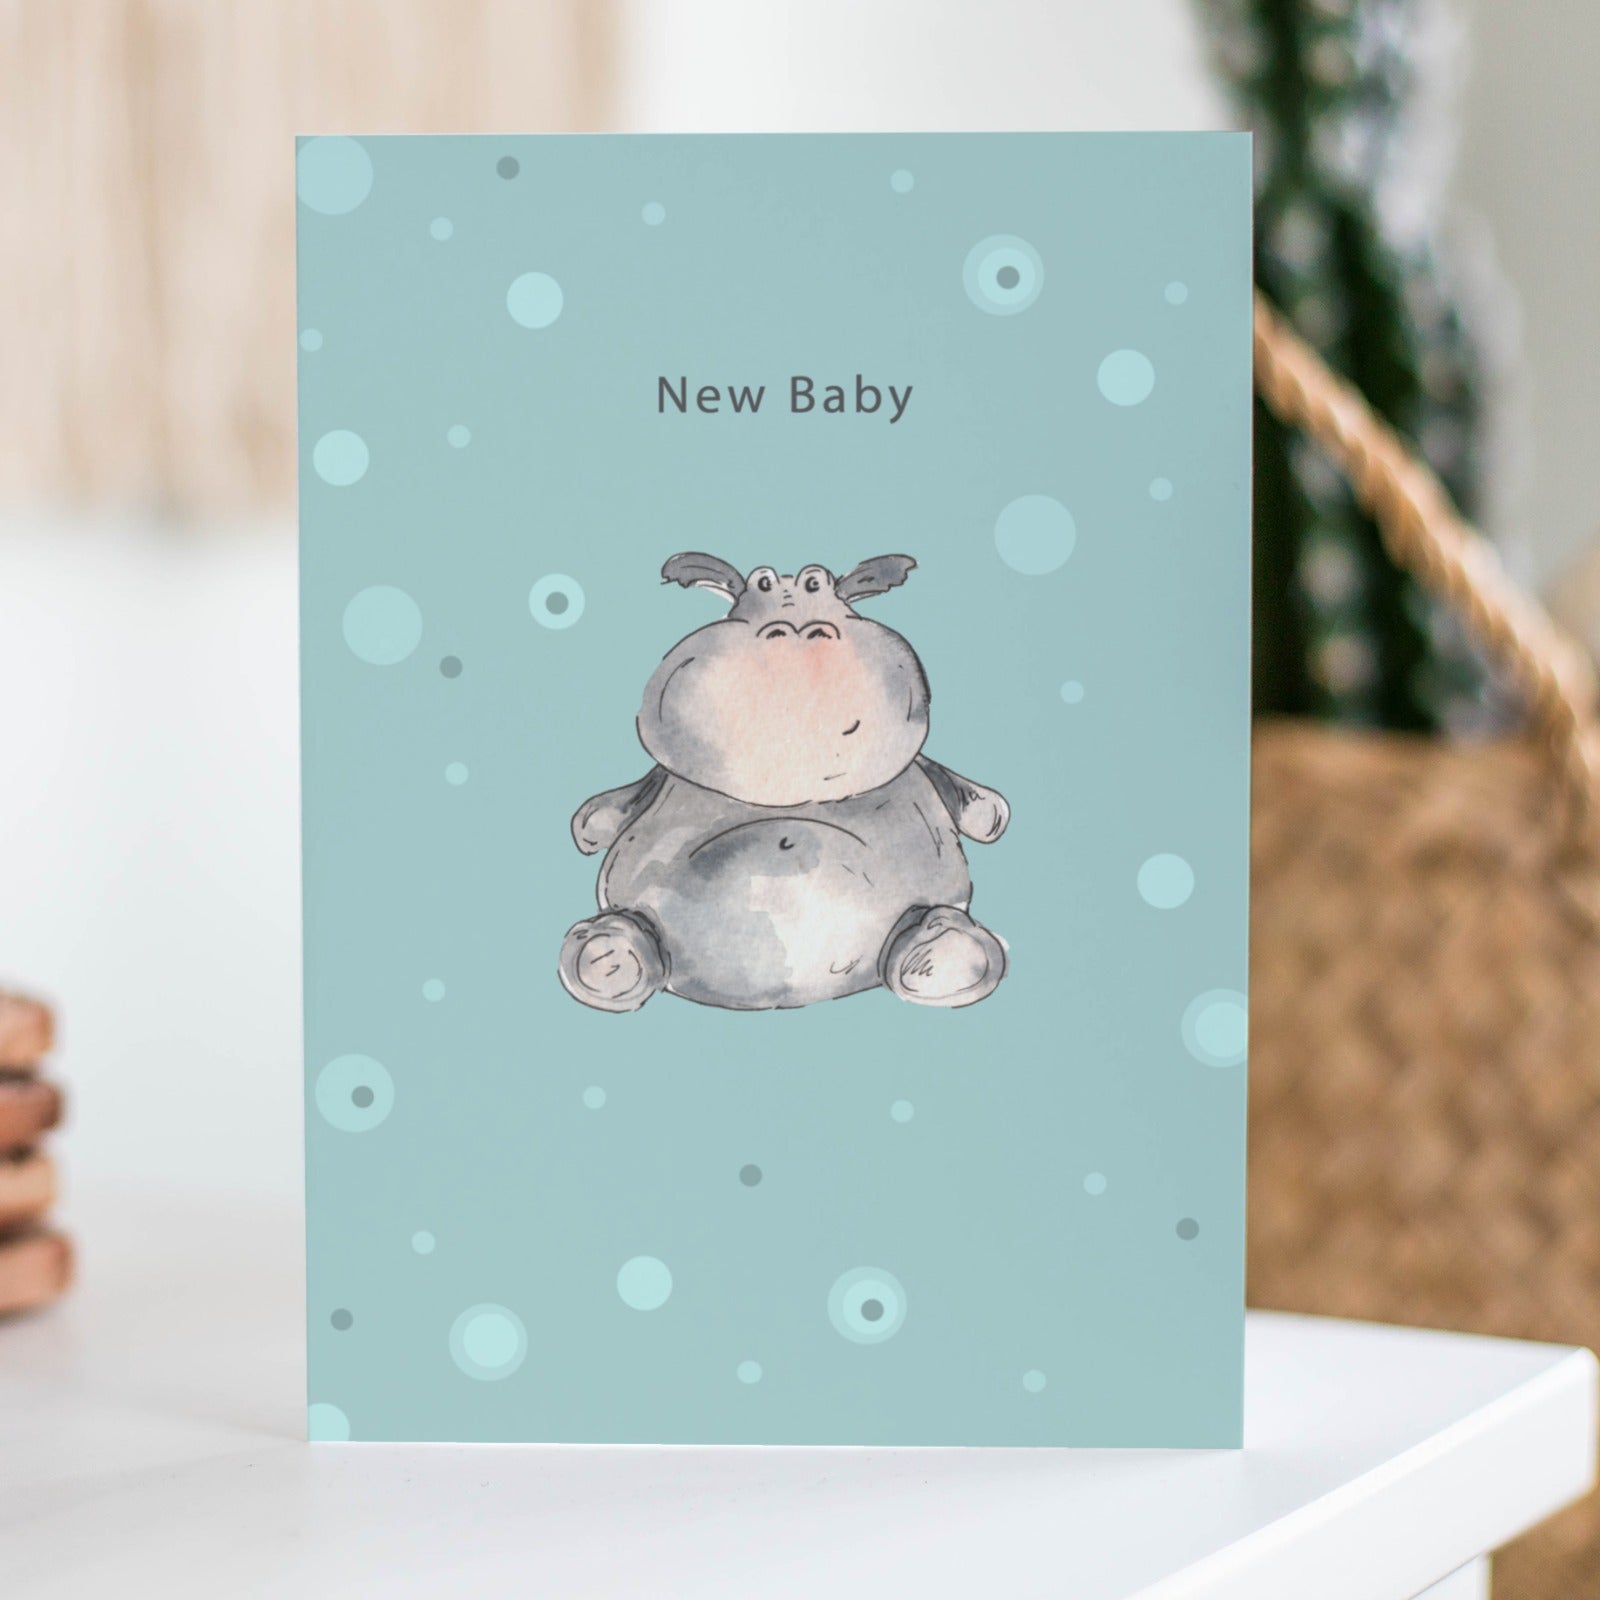 'New Baby' Card by Meg Hawkins